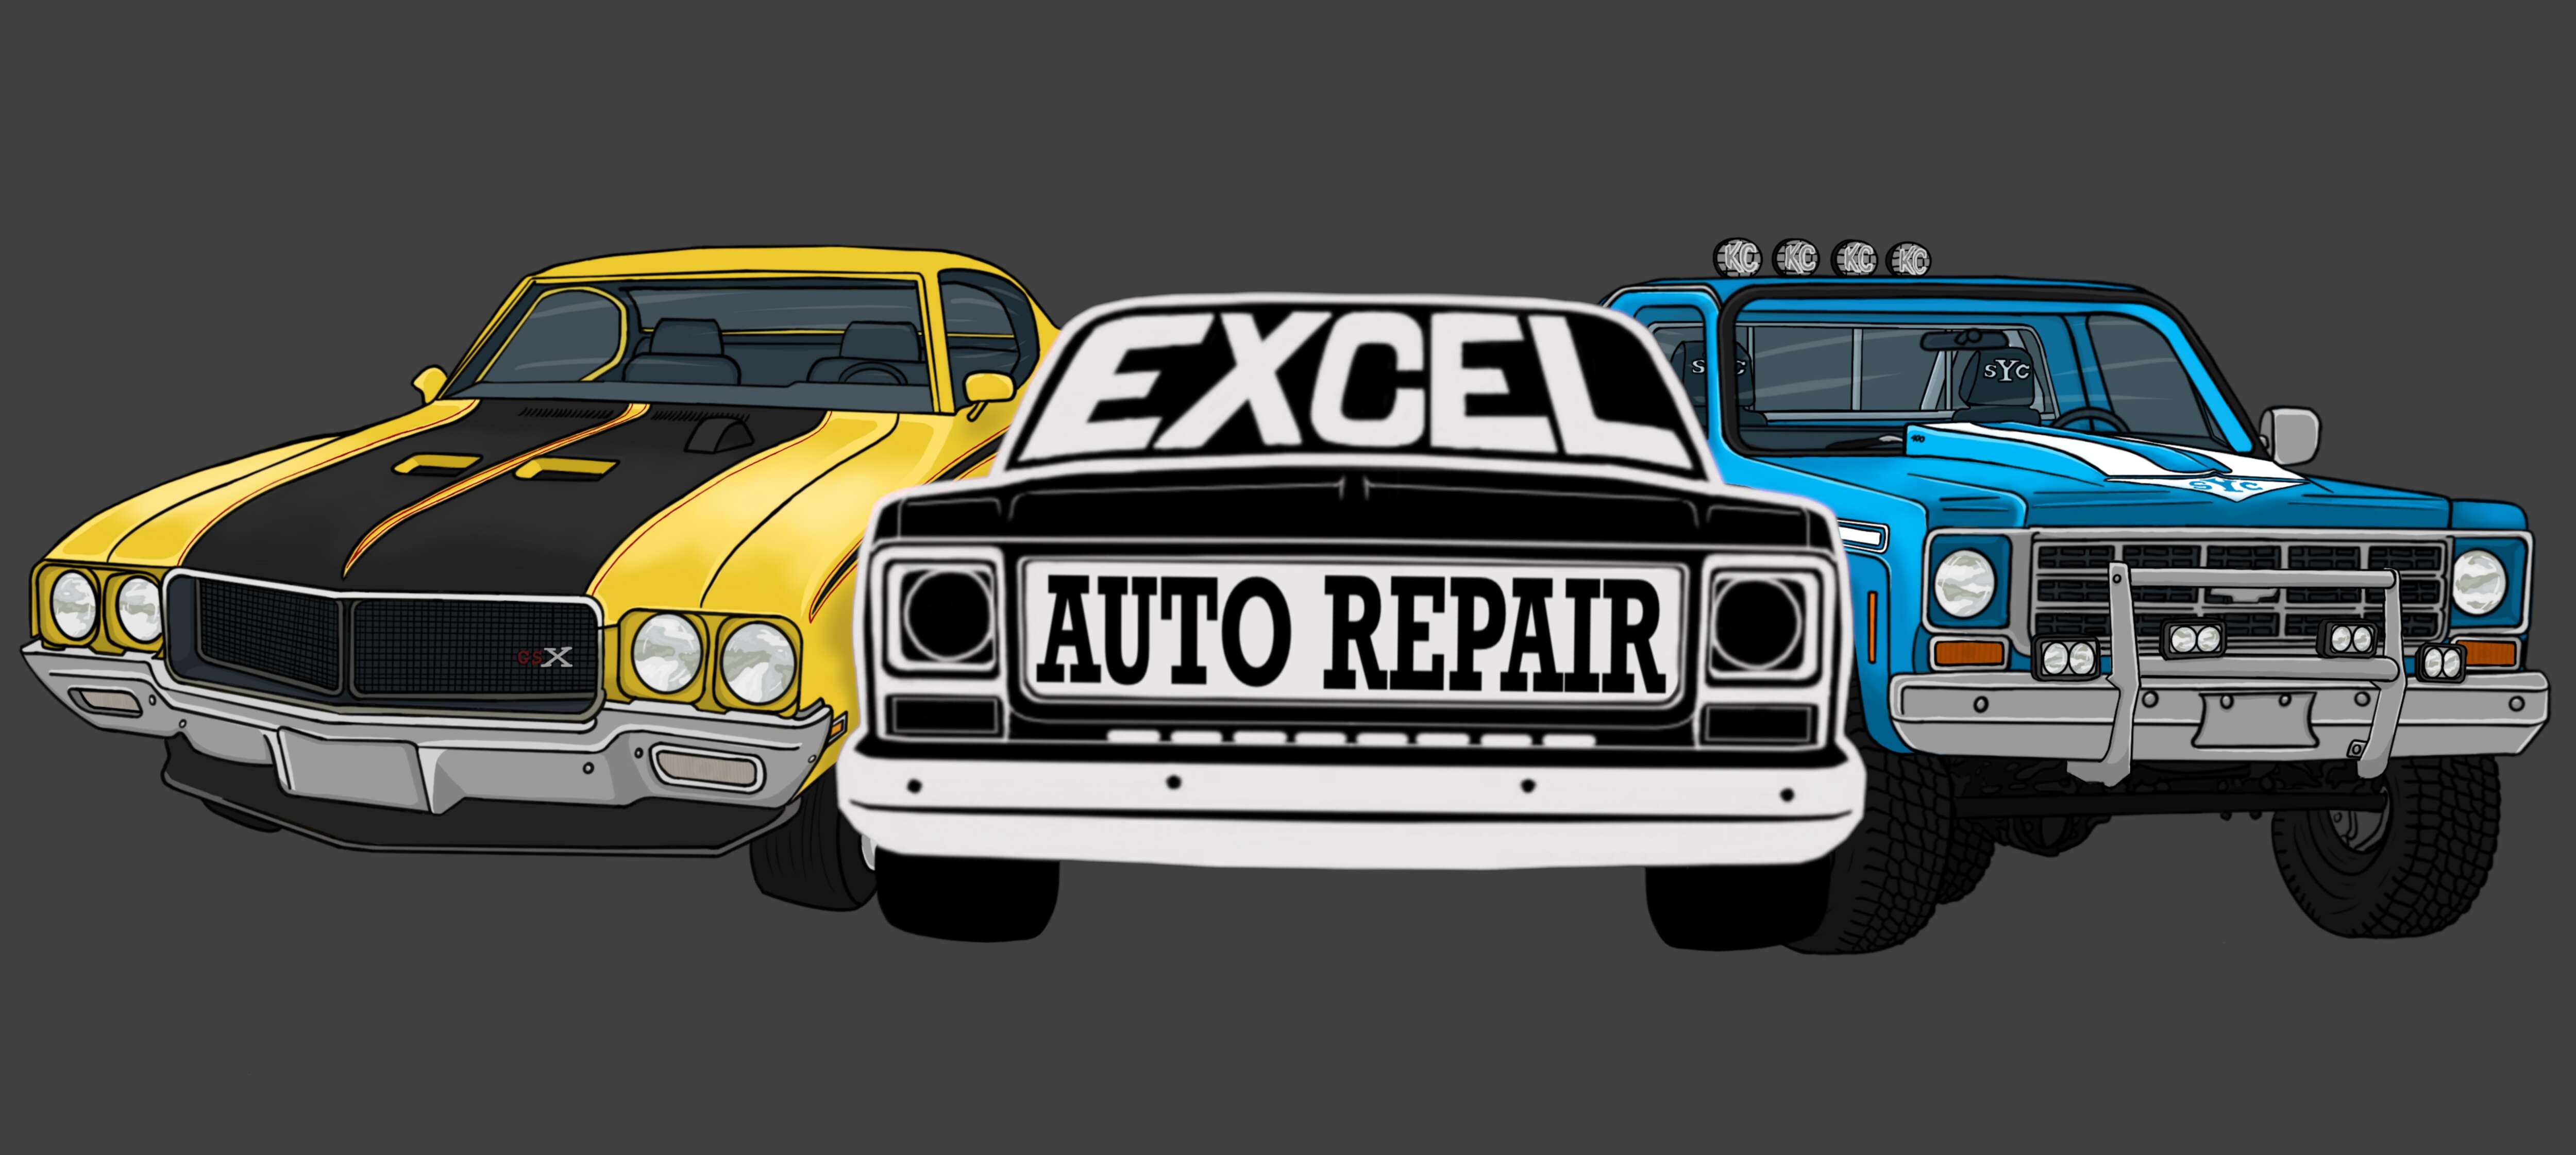 Excel Auto Repair